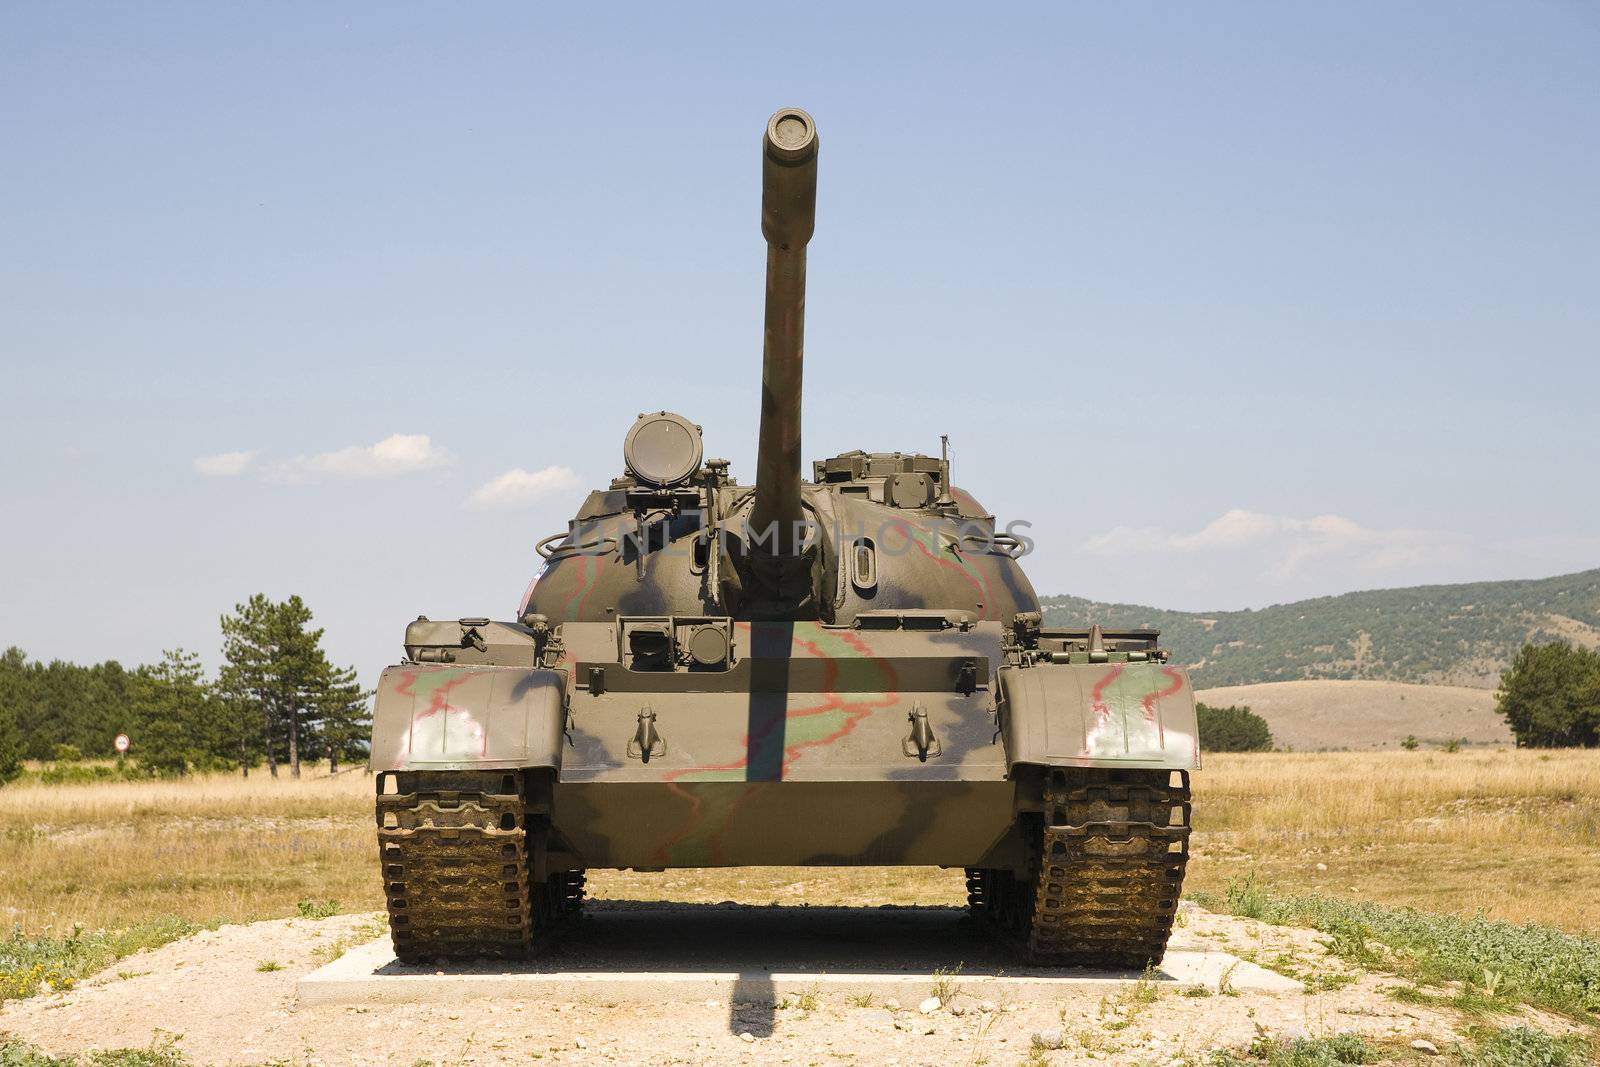 Croatian tank by furzyk73